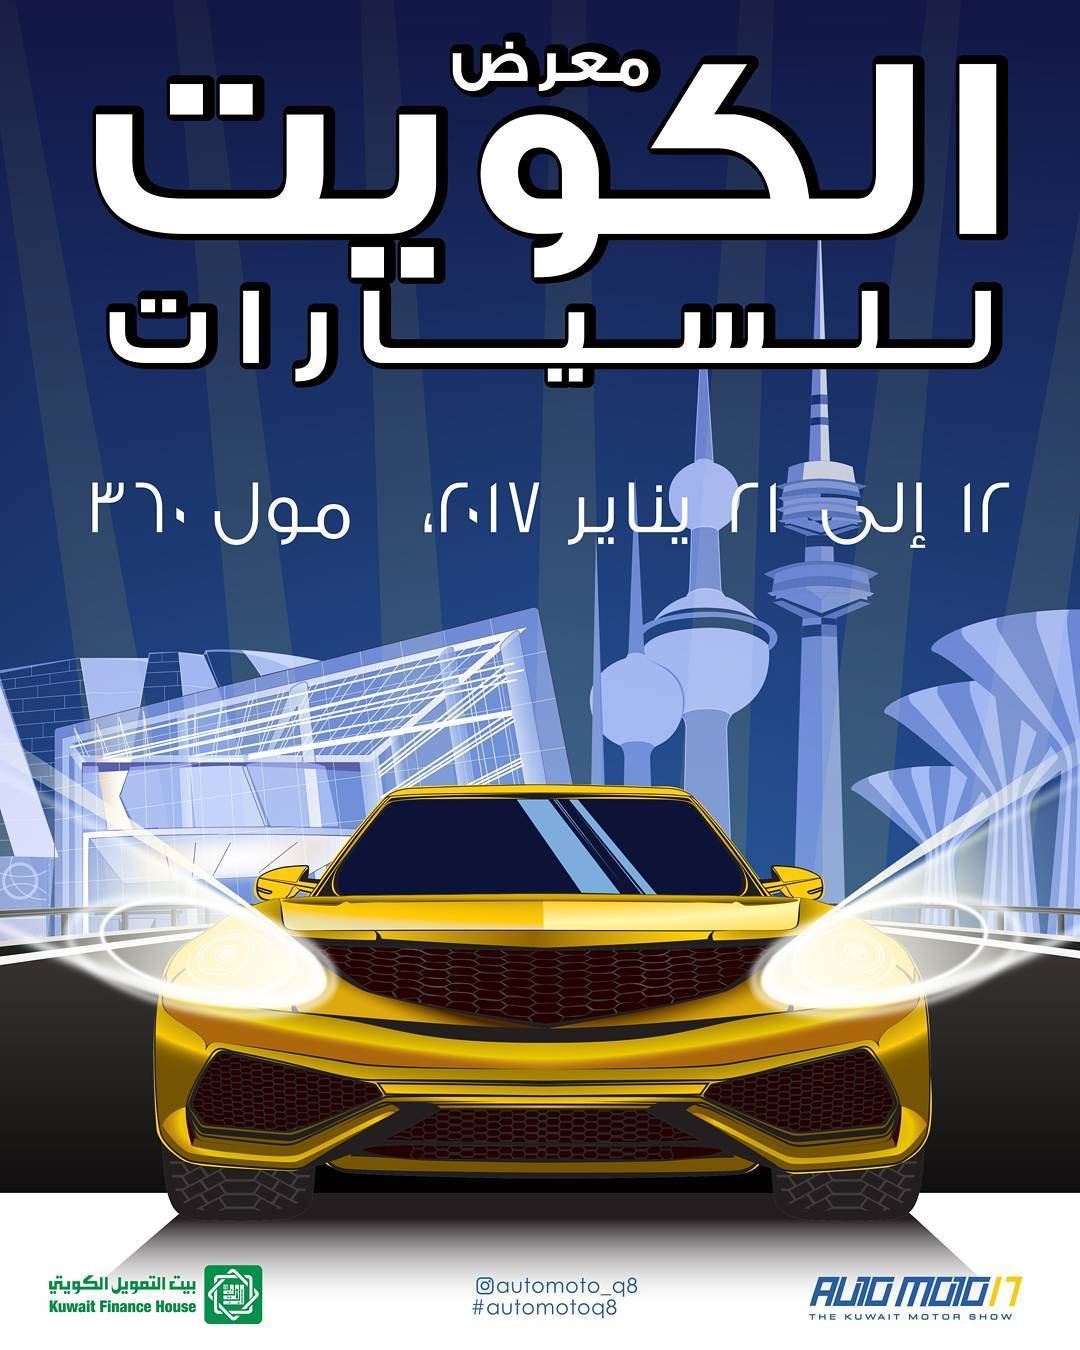 معرض الكويت للسيارات "أوتو موتو" 2017 في مول 360